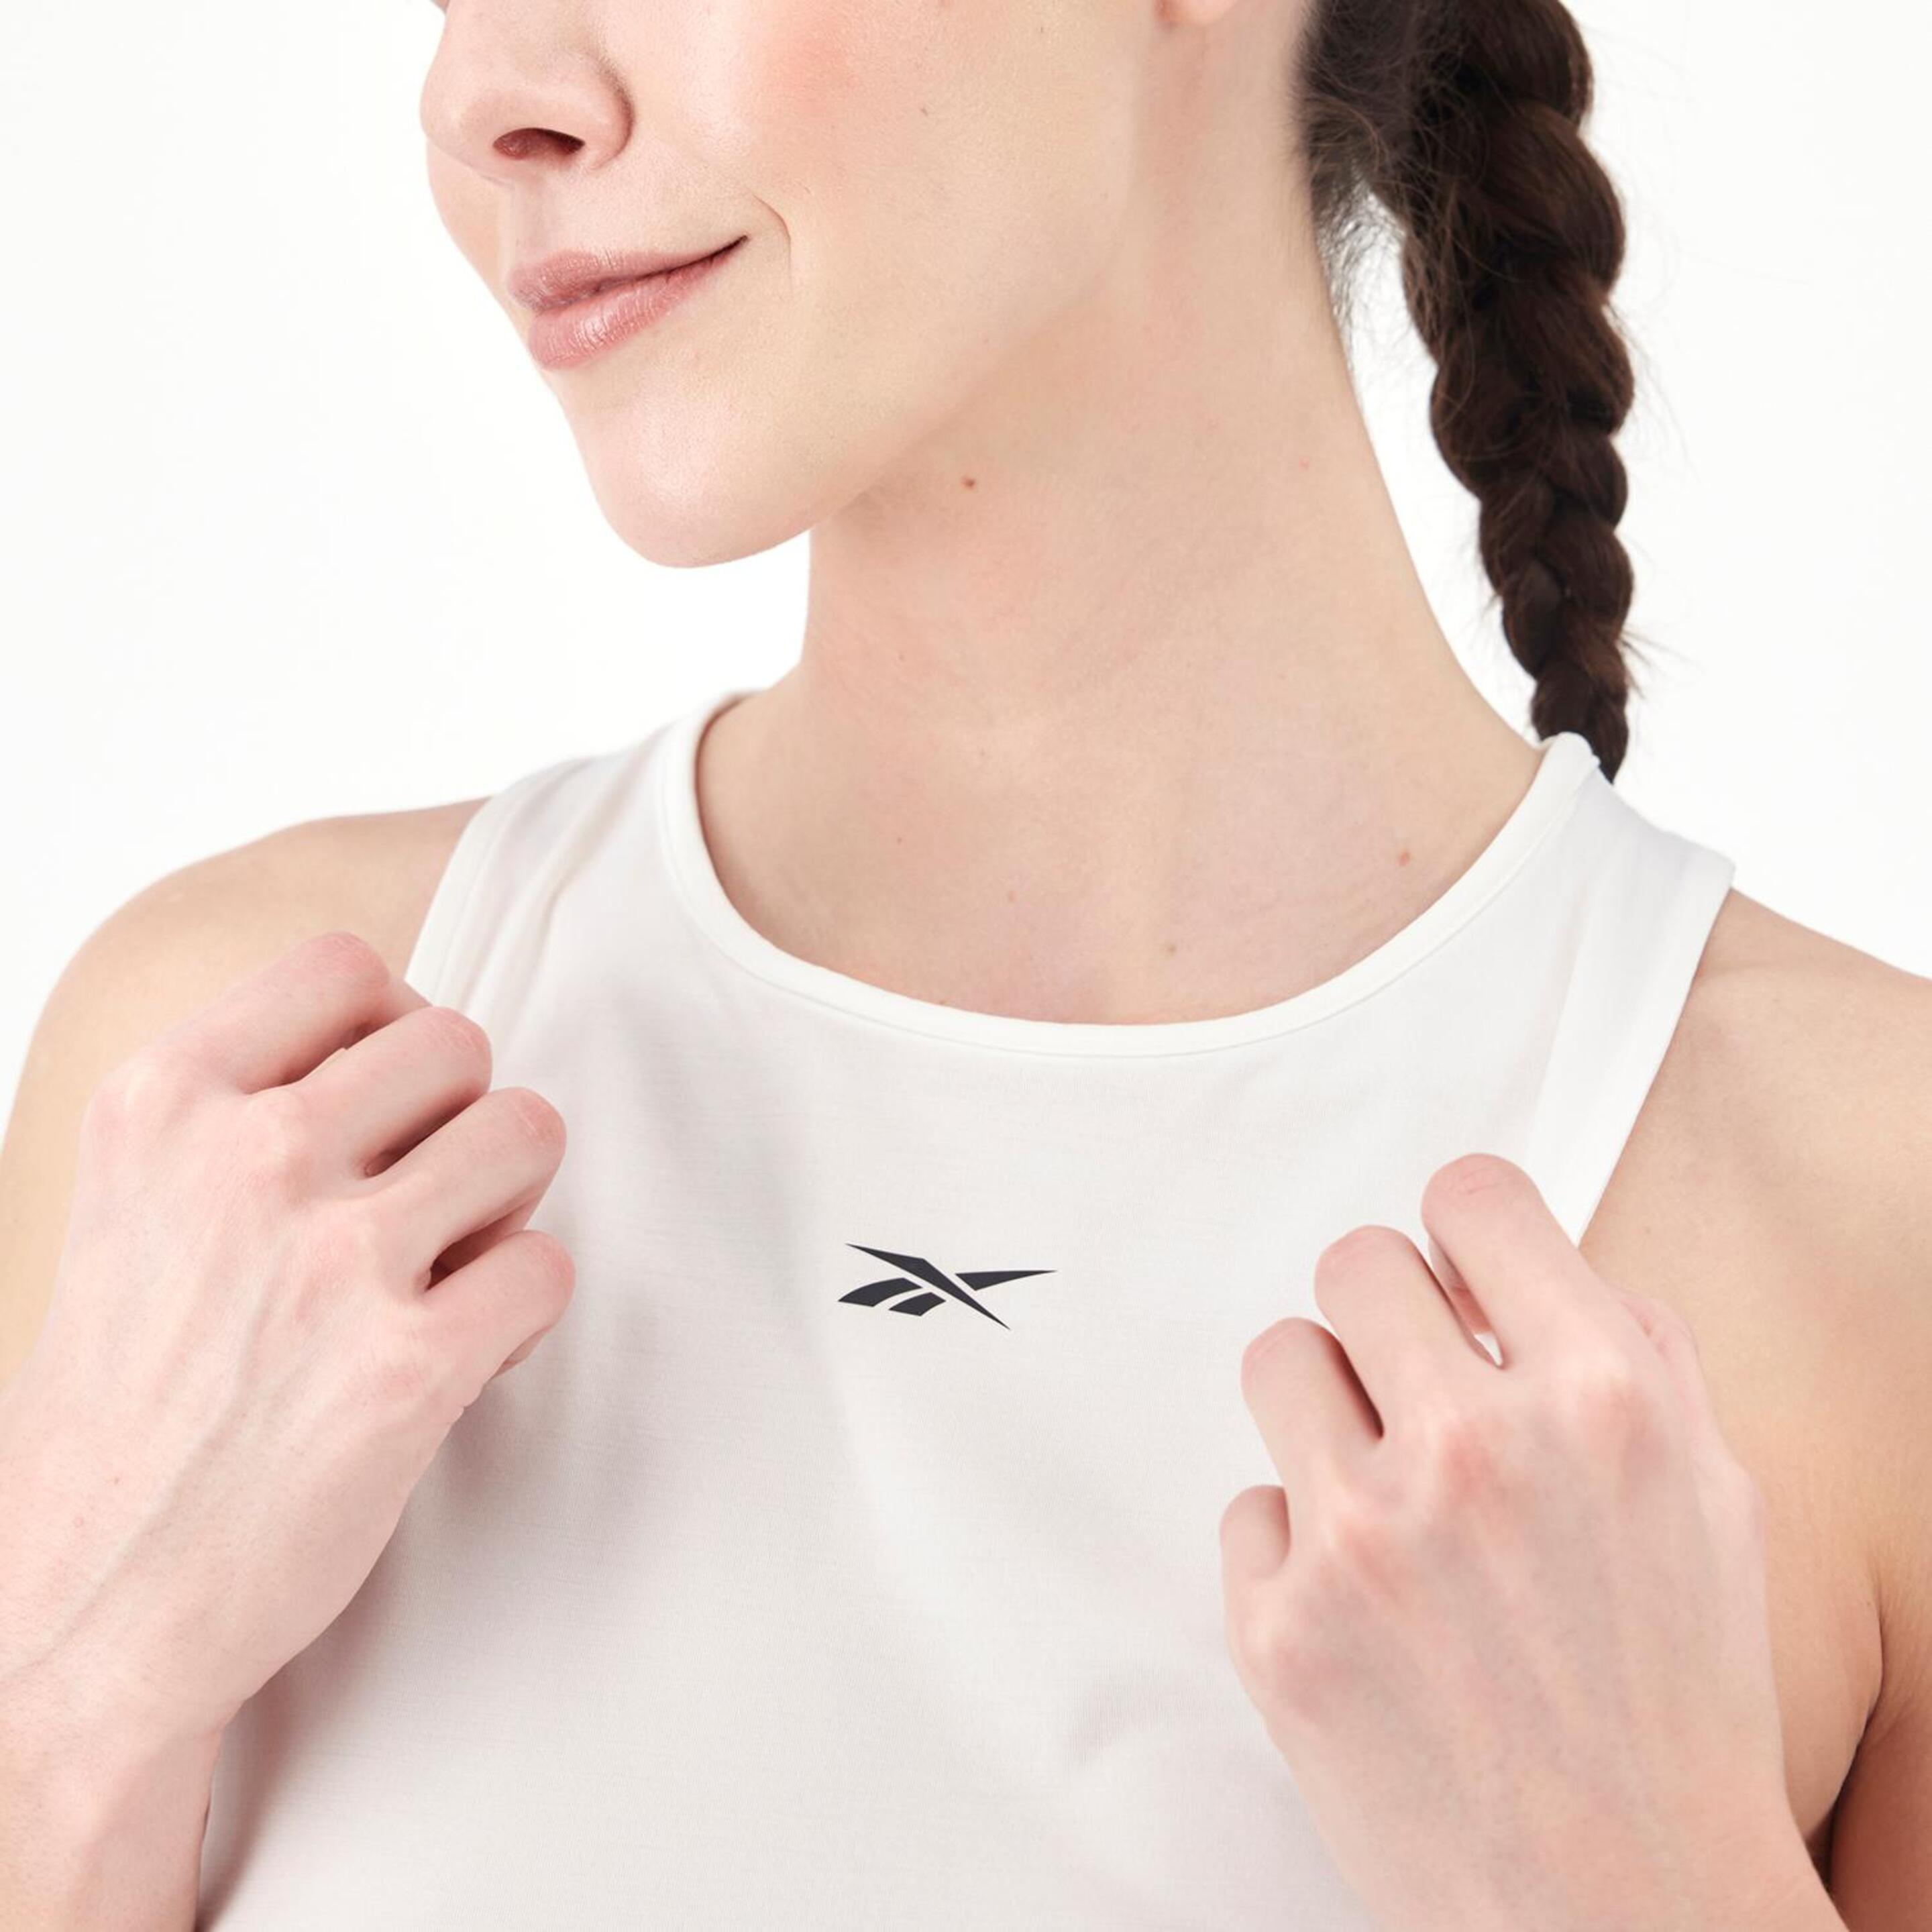 Camiseta Reebok - Blanco - Camiseta Running Mujer